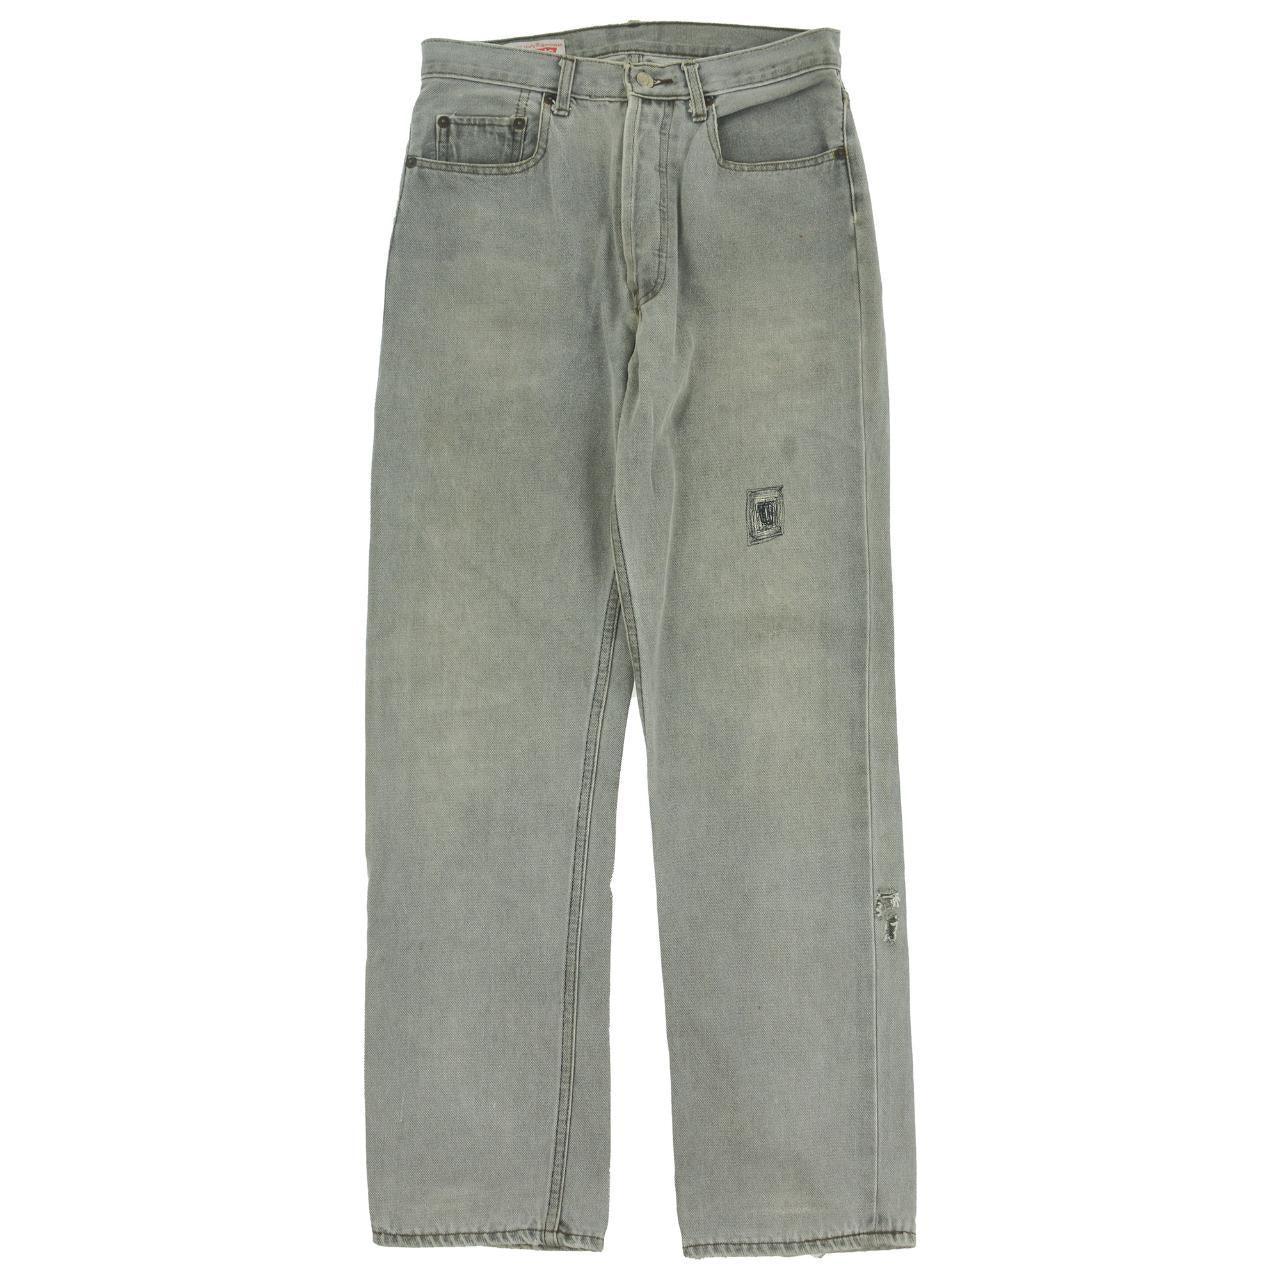 Vintage Levi's Jeans Size Waist 30" - Known Source